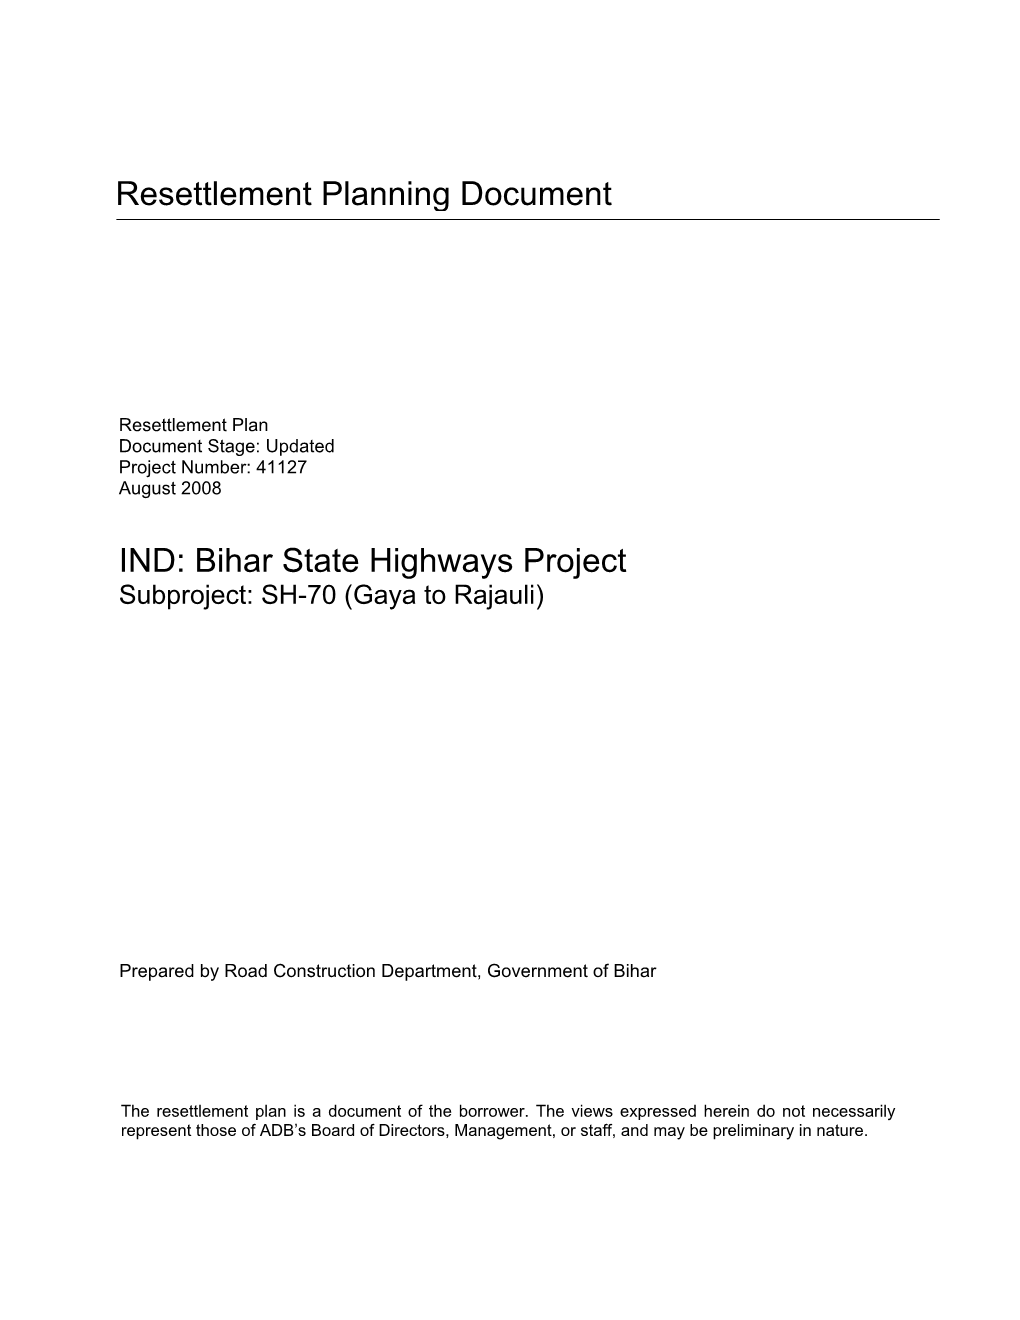 Bihar State Highways Project Subproject: SH-70 (Gaya to Rajauli)